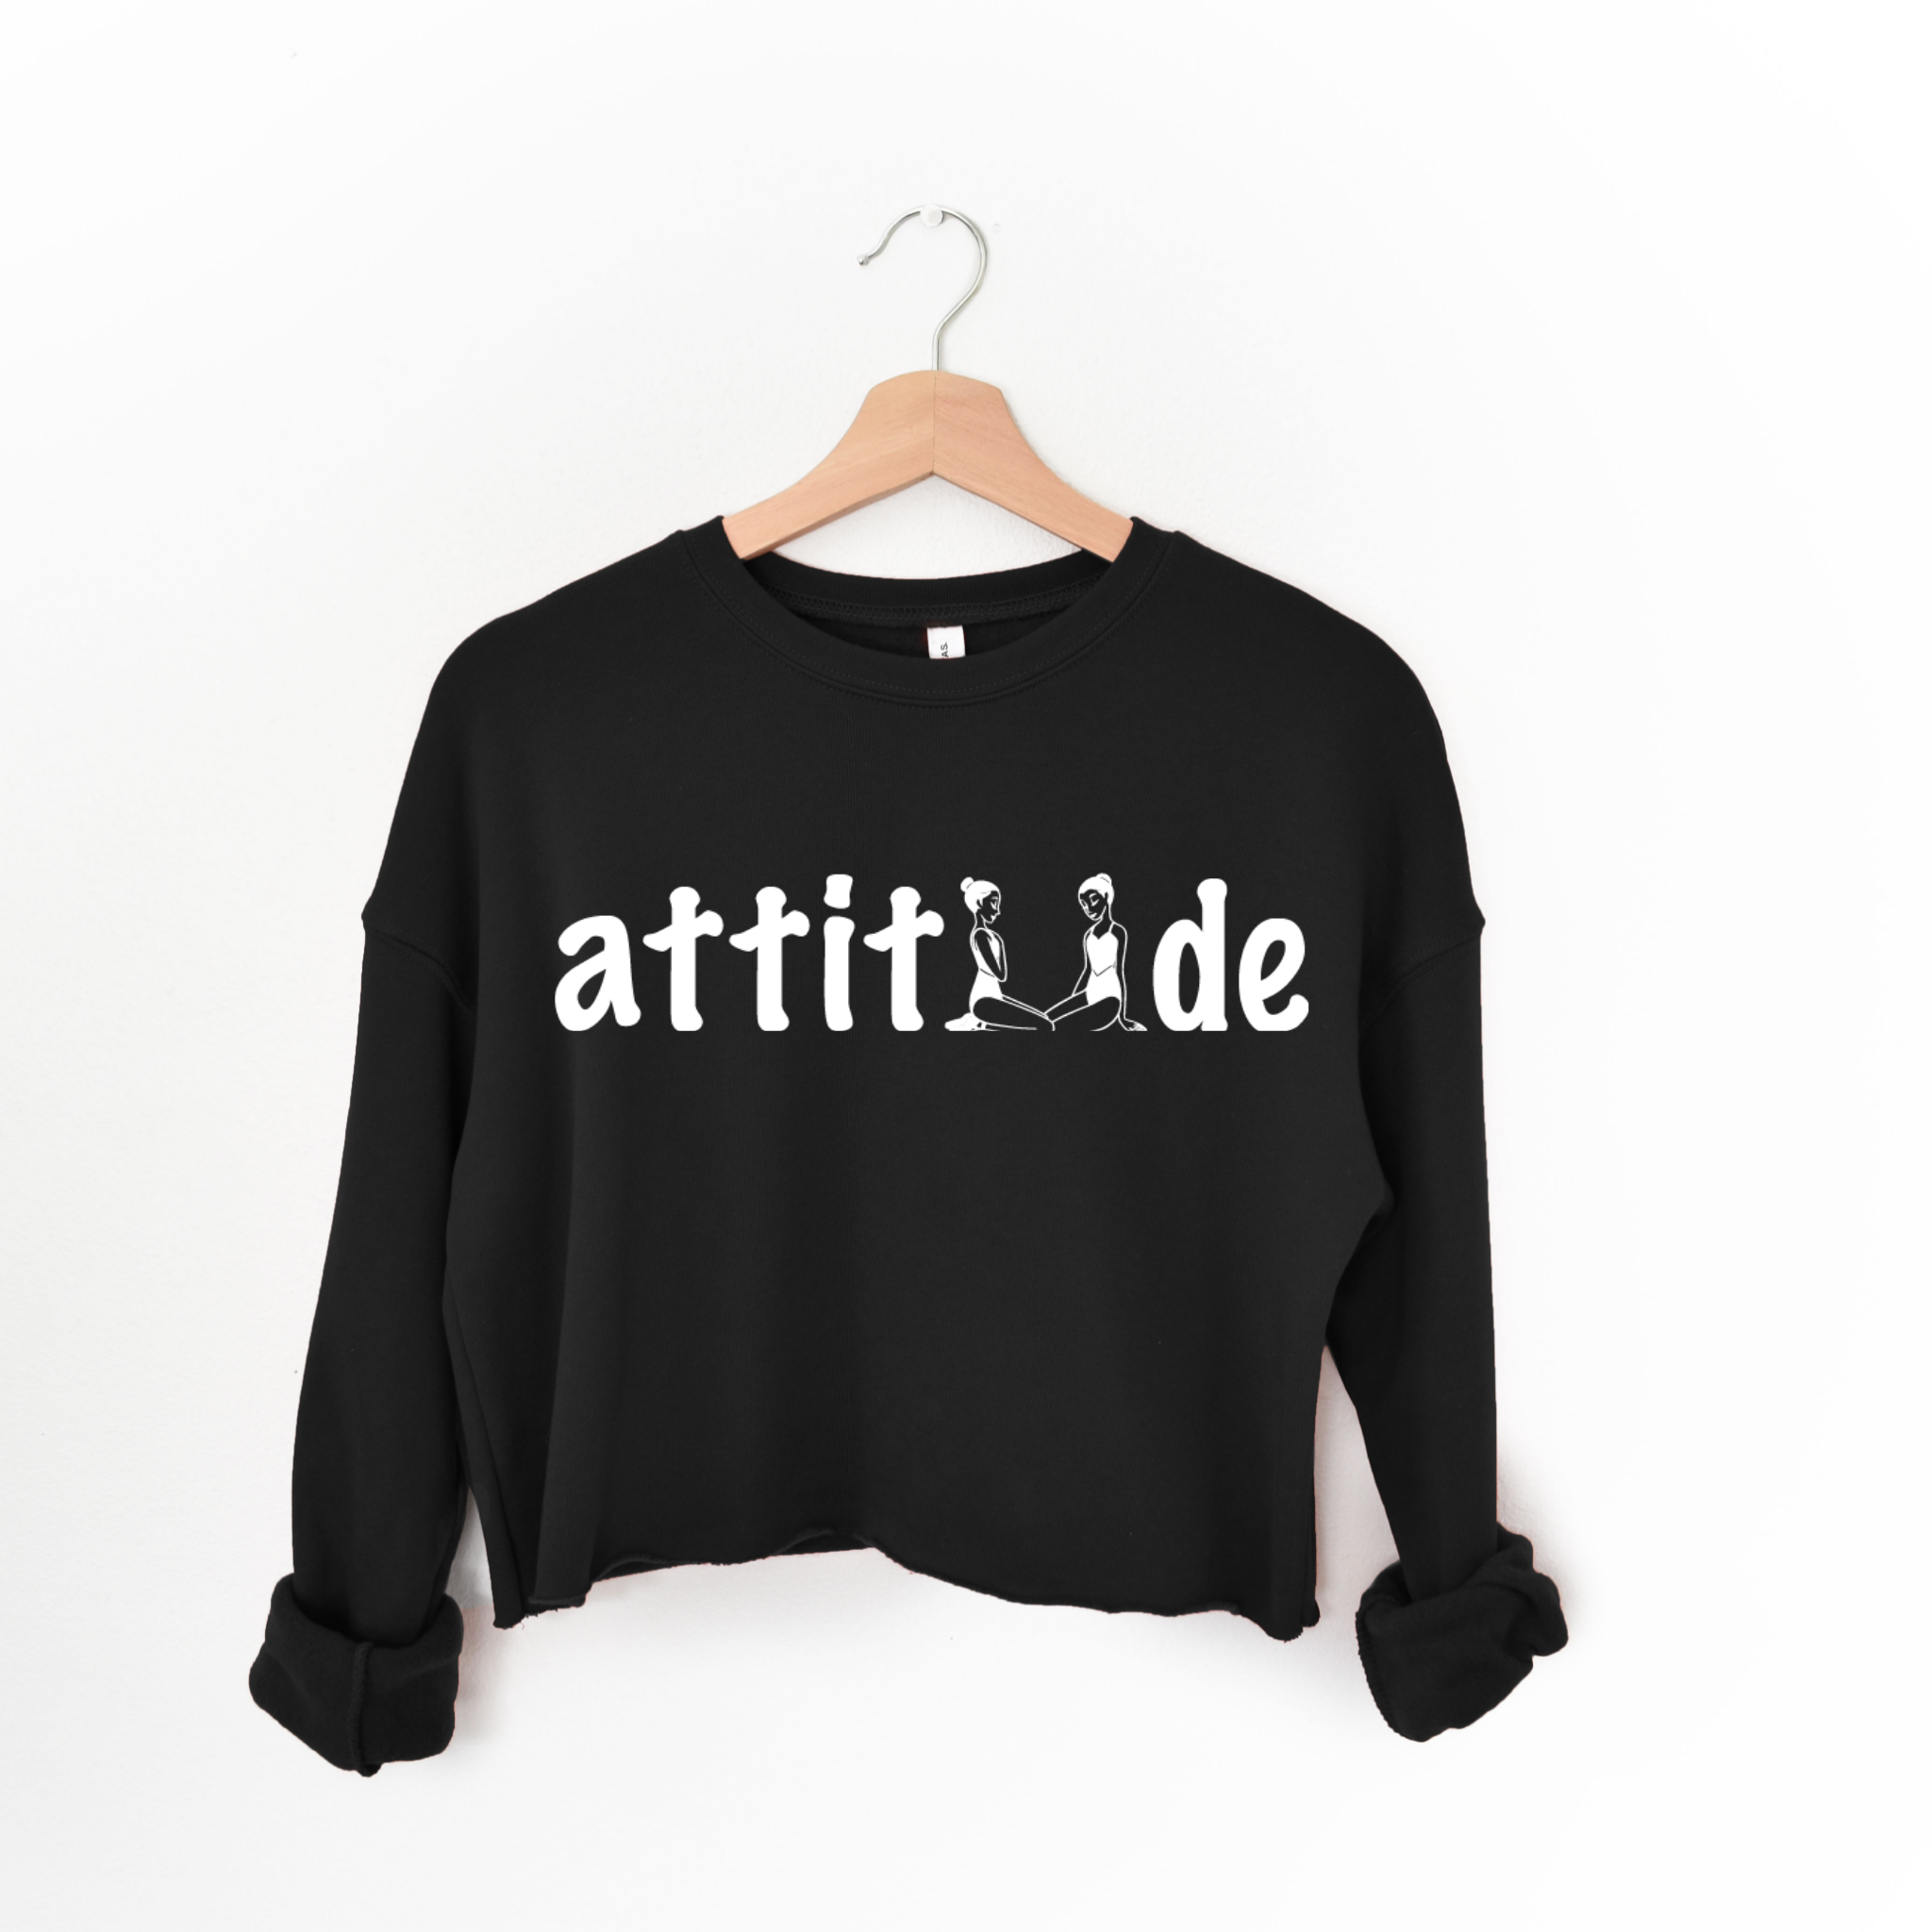 Attitude Crop Top-Black